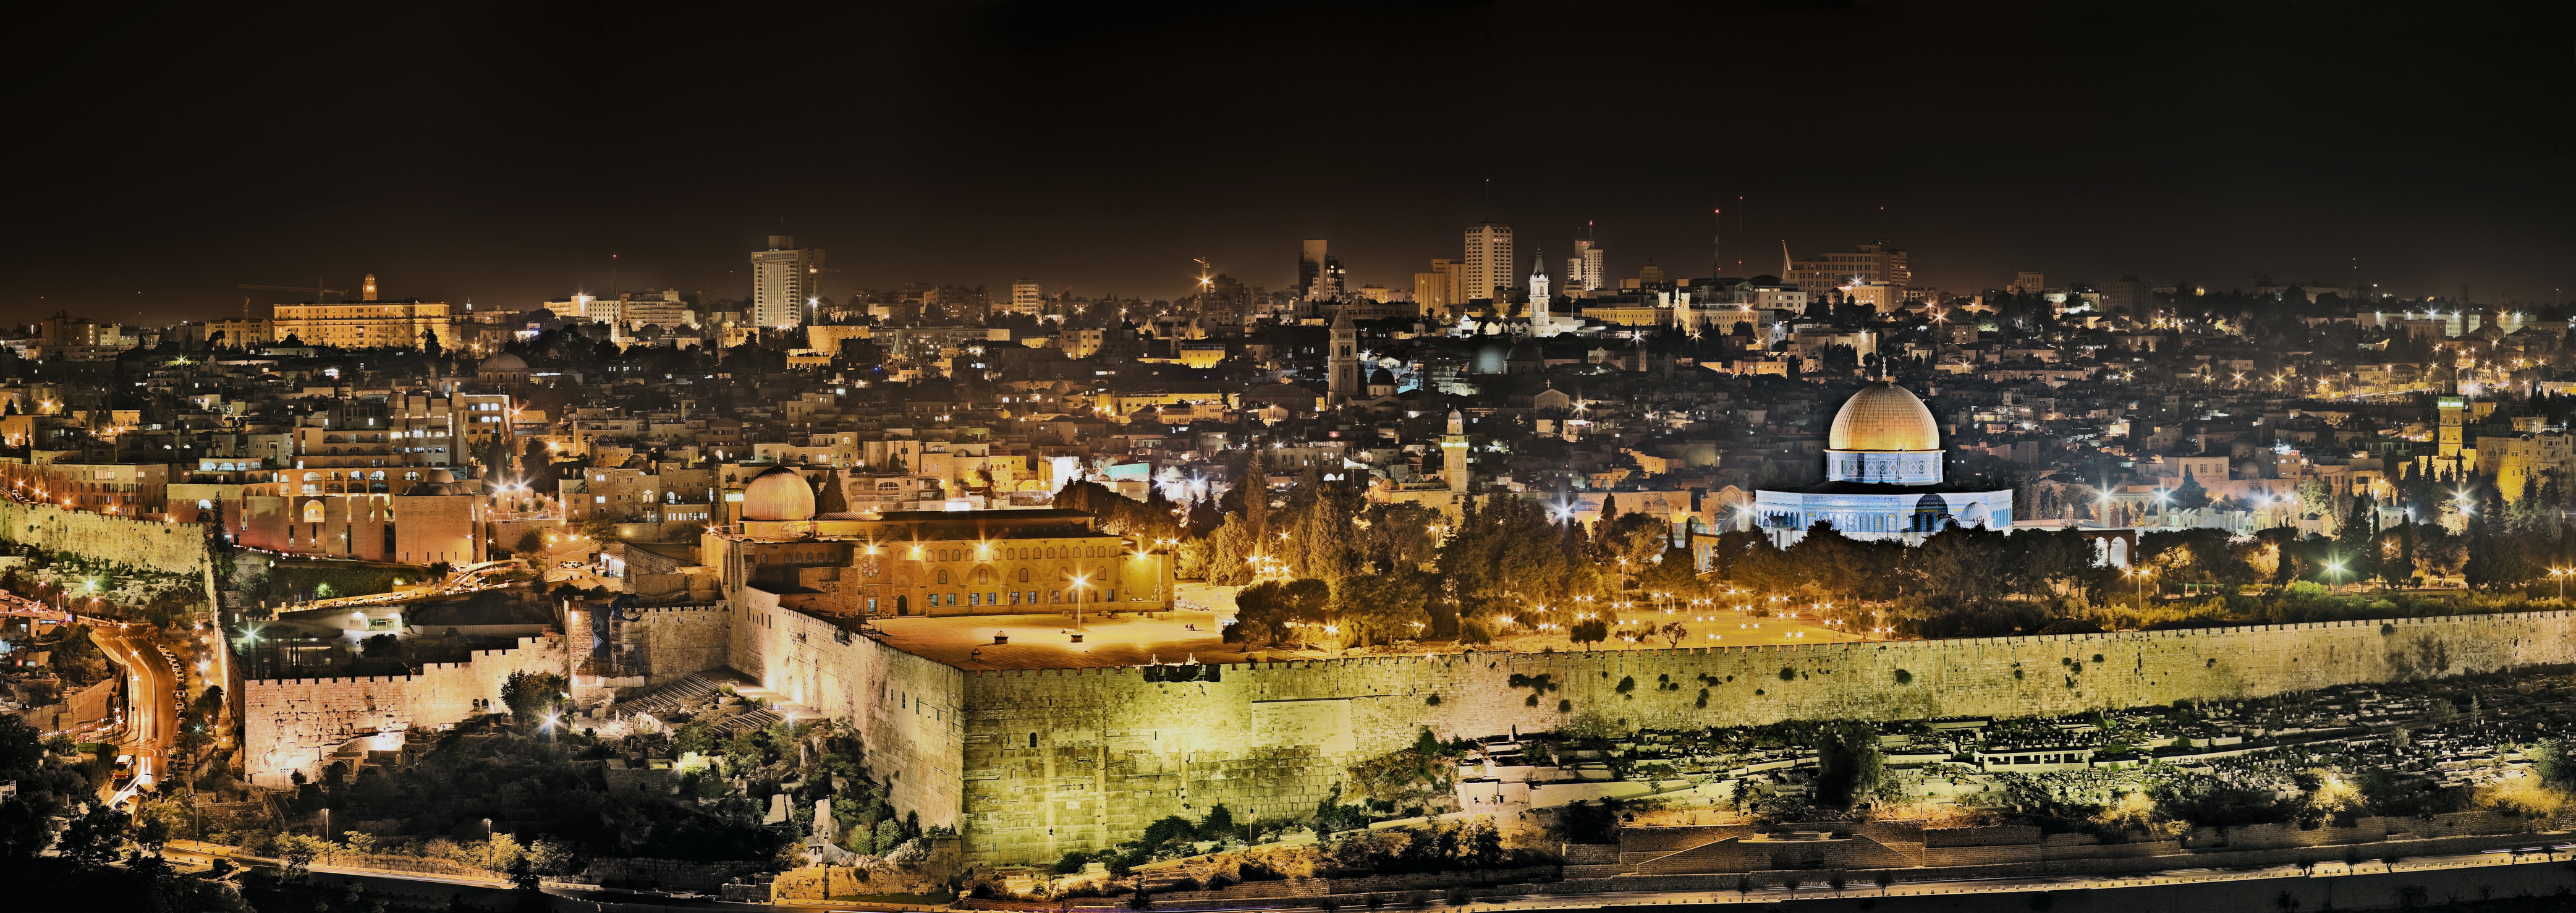 Достопримечательности в Иерусалиме 